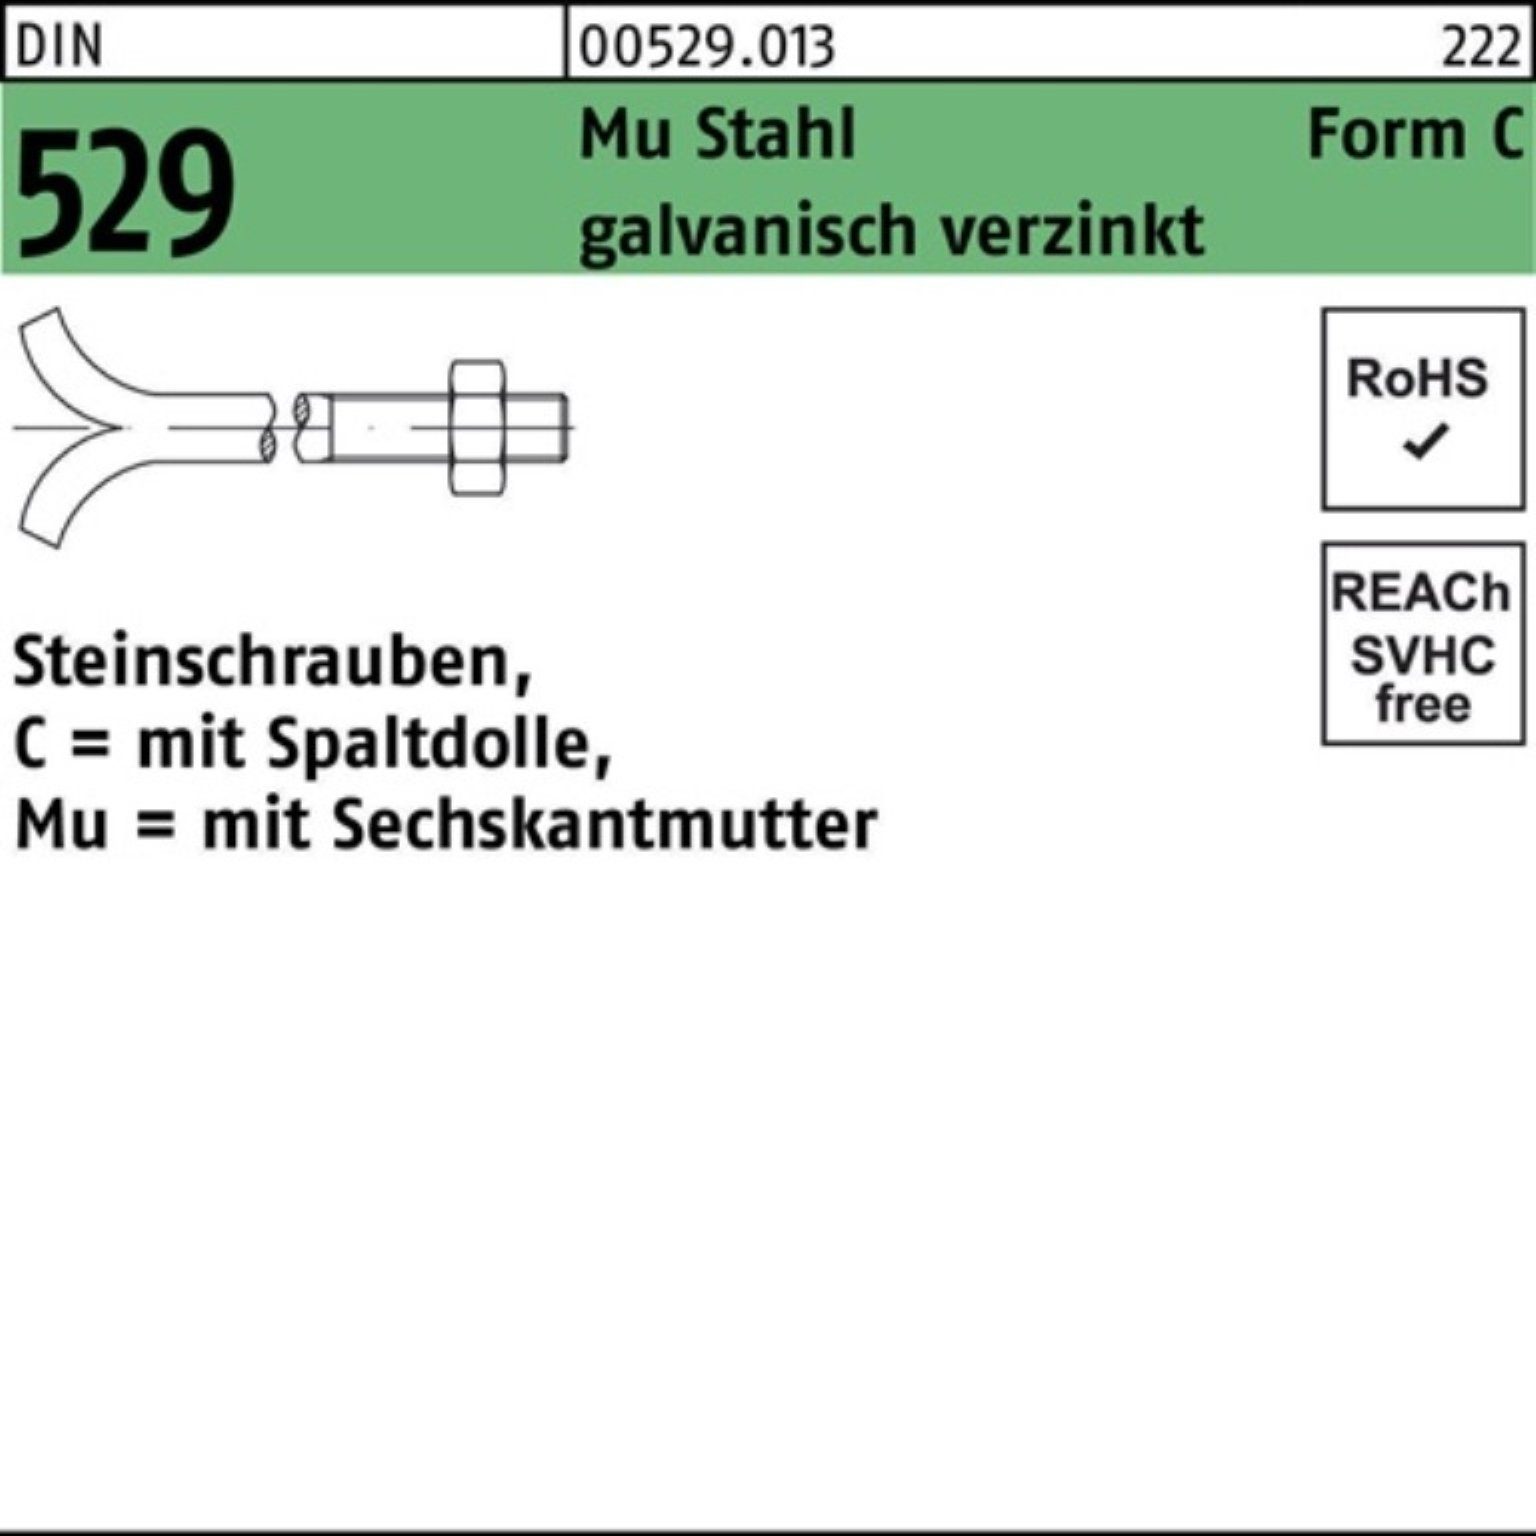 30x250 Schraube Mu Steinschraube DIN Reyher 3. Pack CM Spaltdolle/6-ktmutter 100er 529